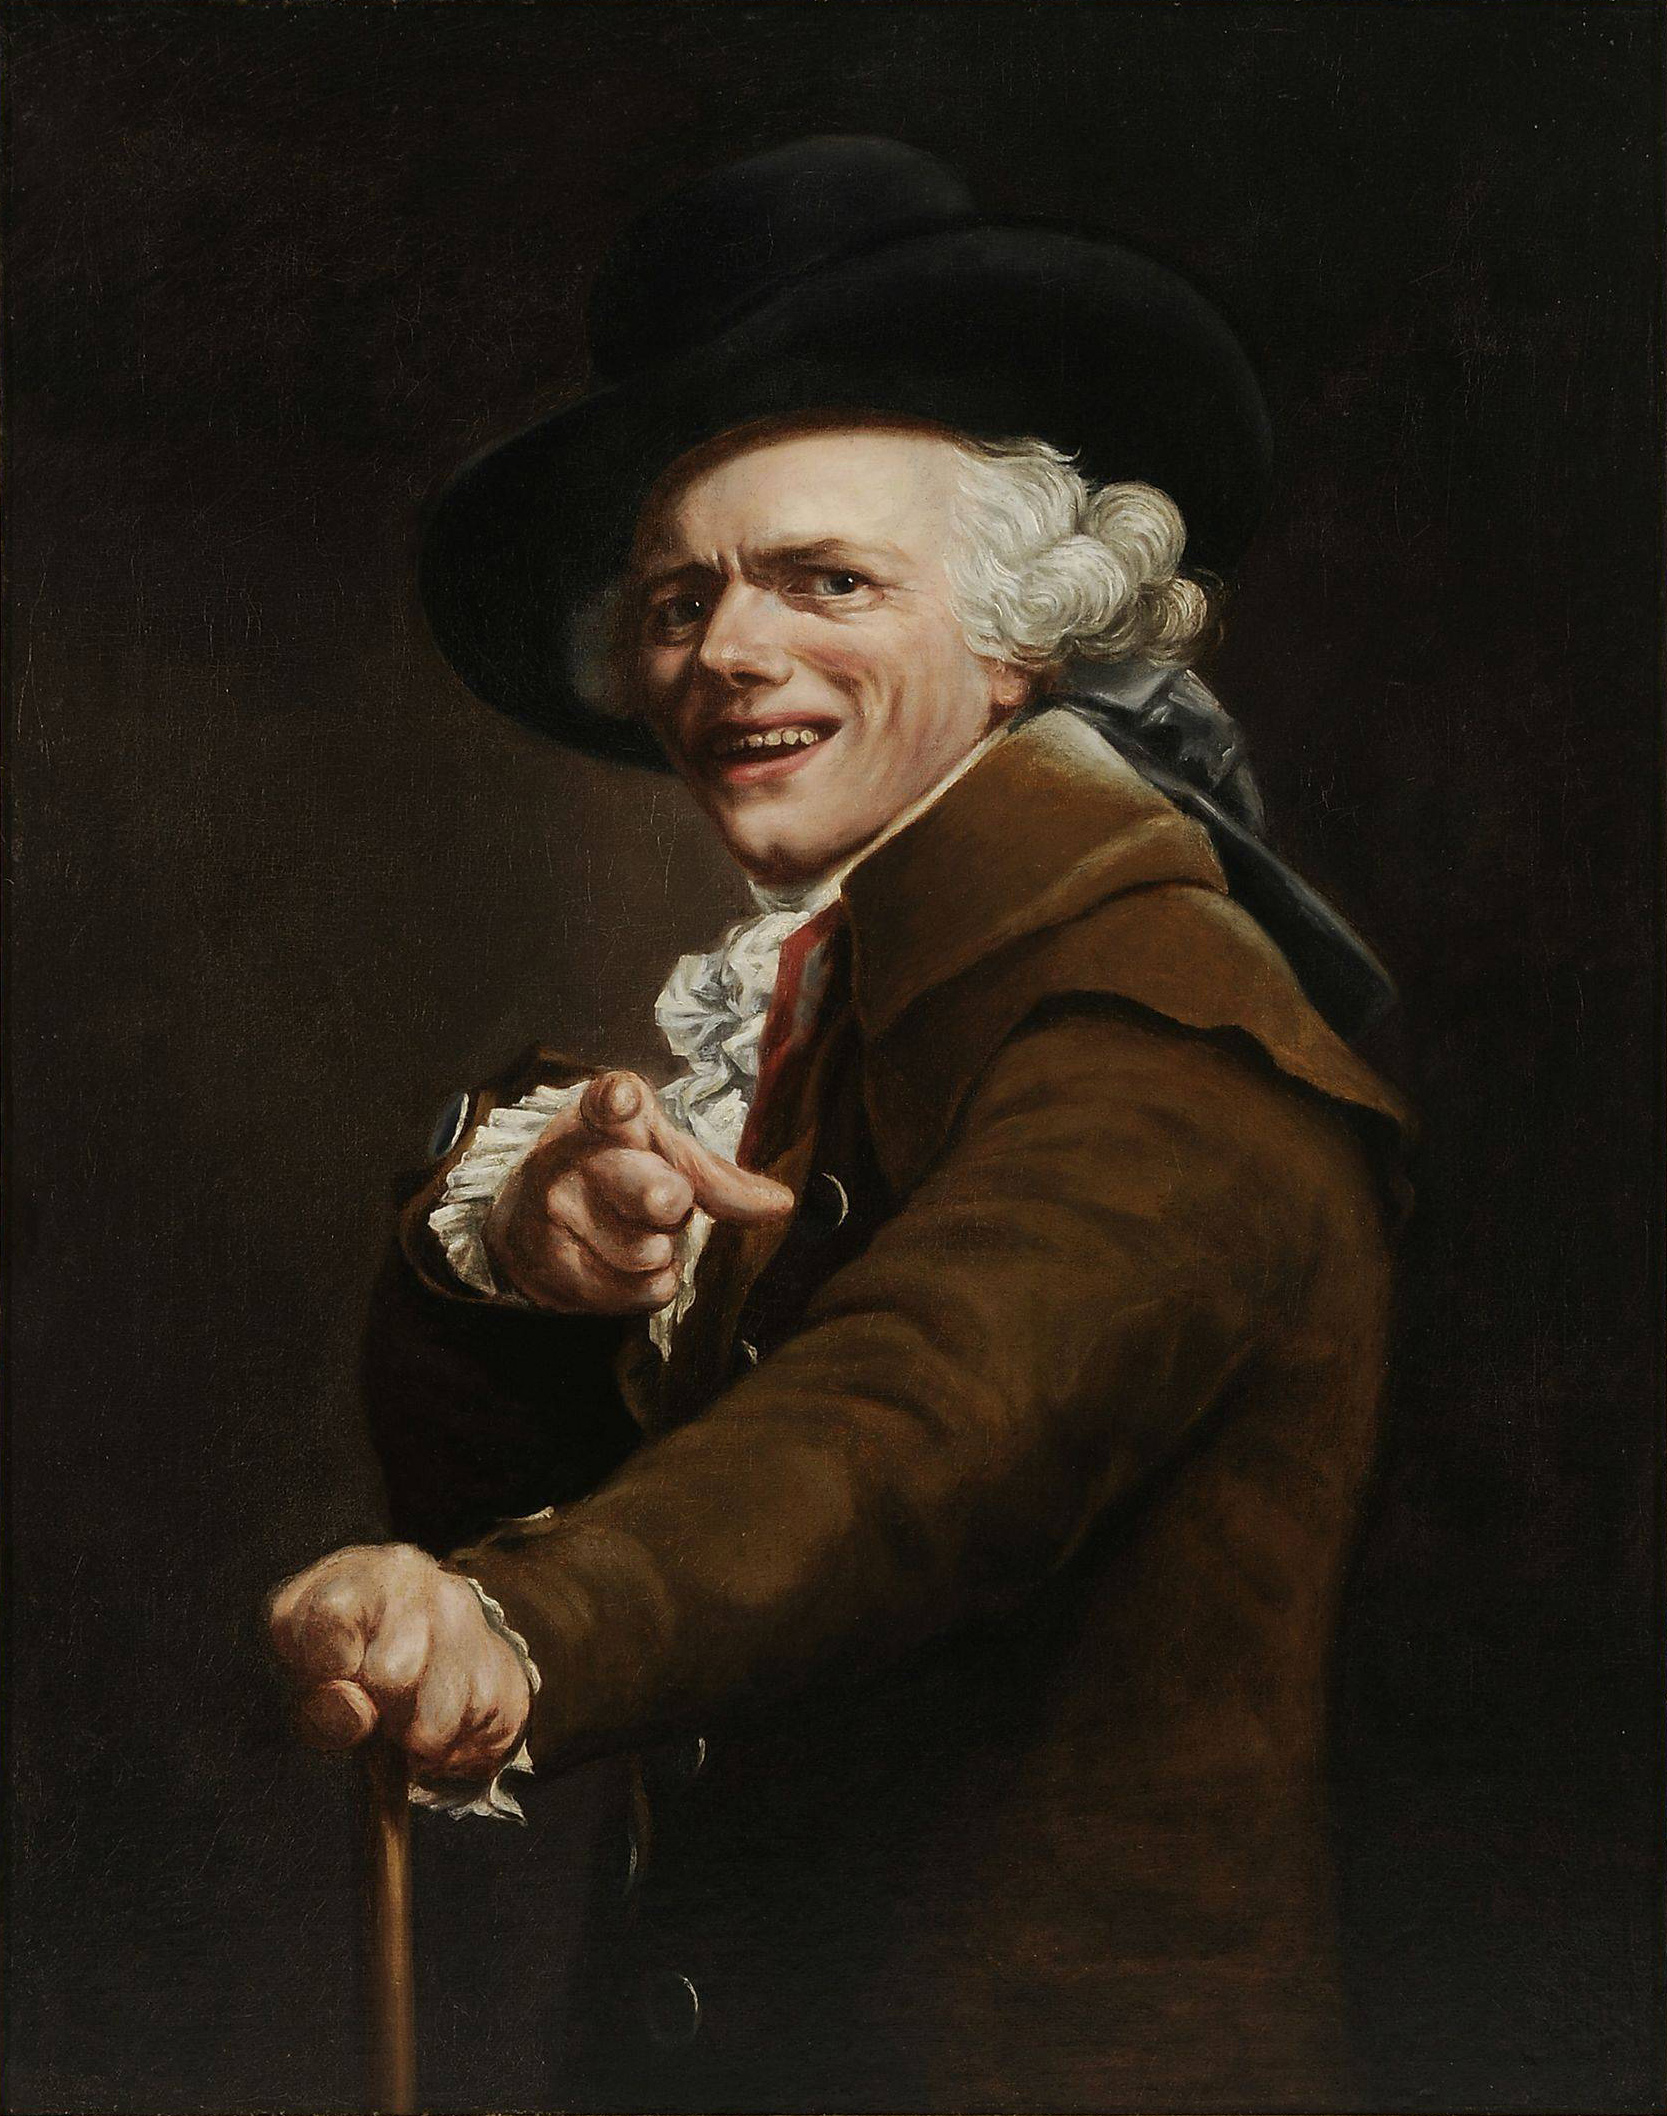 嘲笑の表情をした自画像 by Joseph Ducreux - 1791 - 91 × 72 cm 